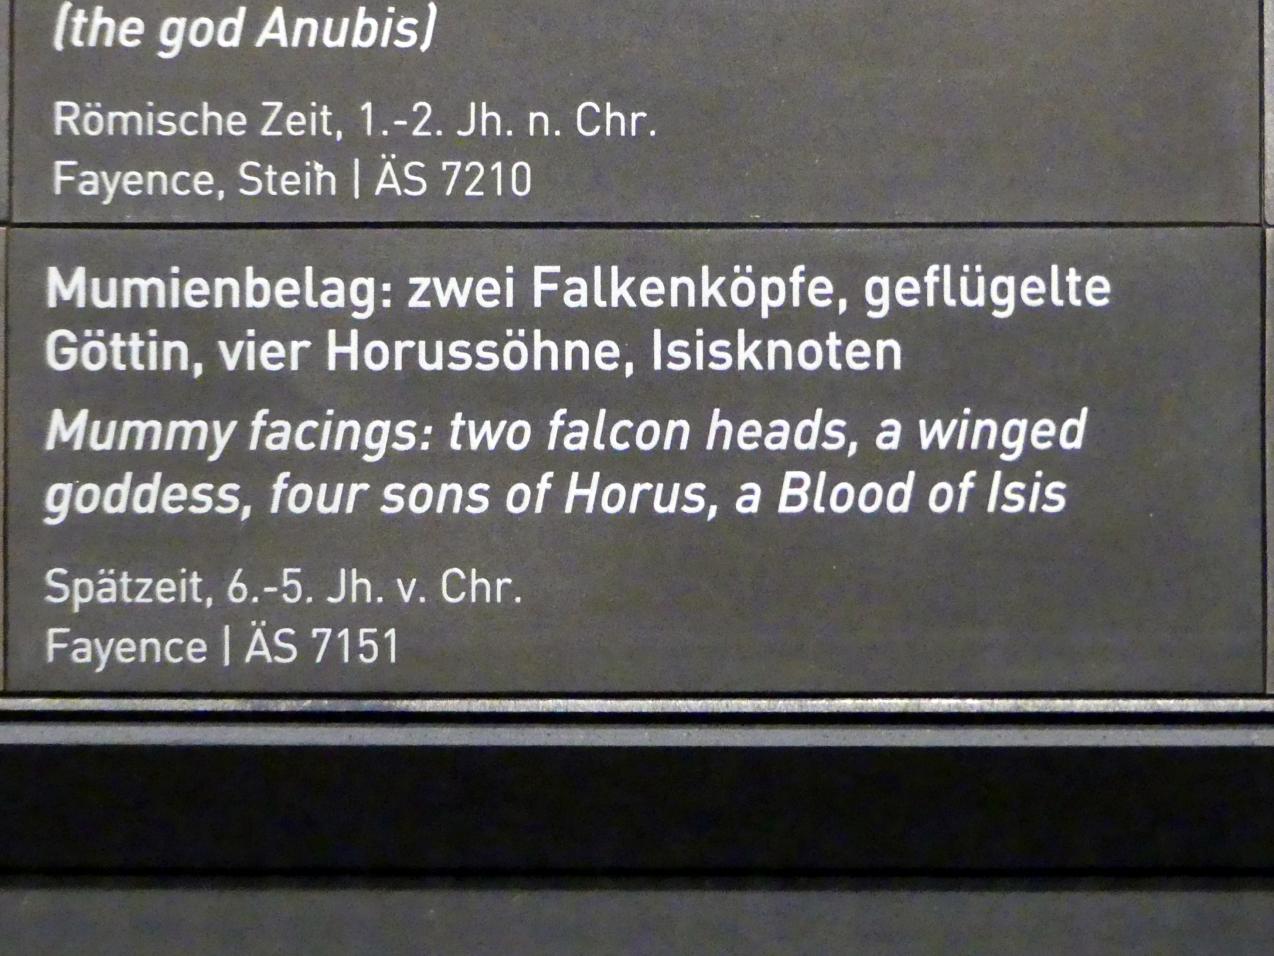 Mumienbelag: zwei Falkenköpfe, geflügelte Göttin, vier Horussöhne, Isisknoten, Spätzeit, 360 - 342 v. Chr., 600 - 400 v. Chr., Bild 2/2